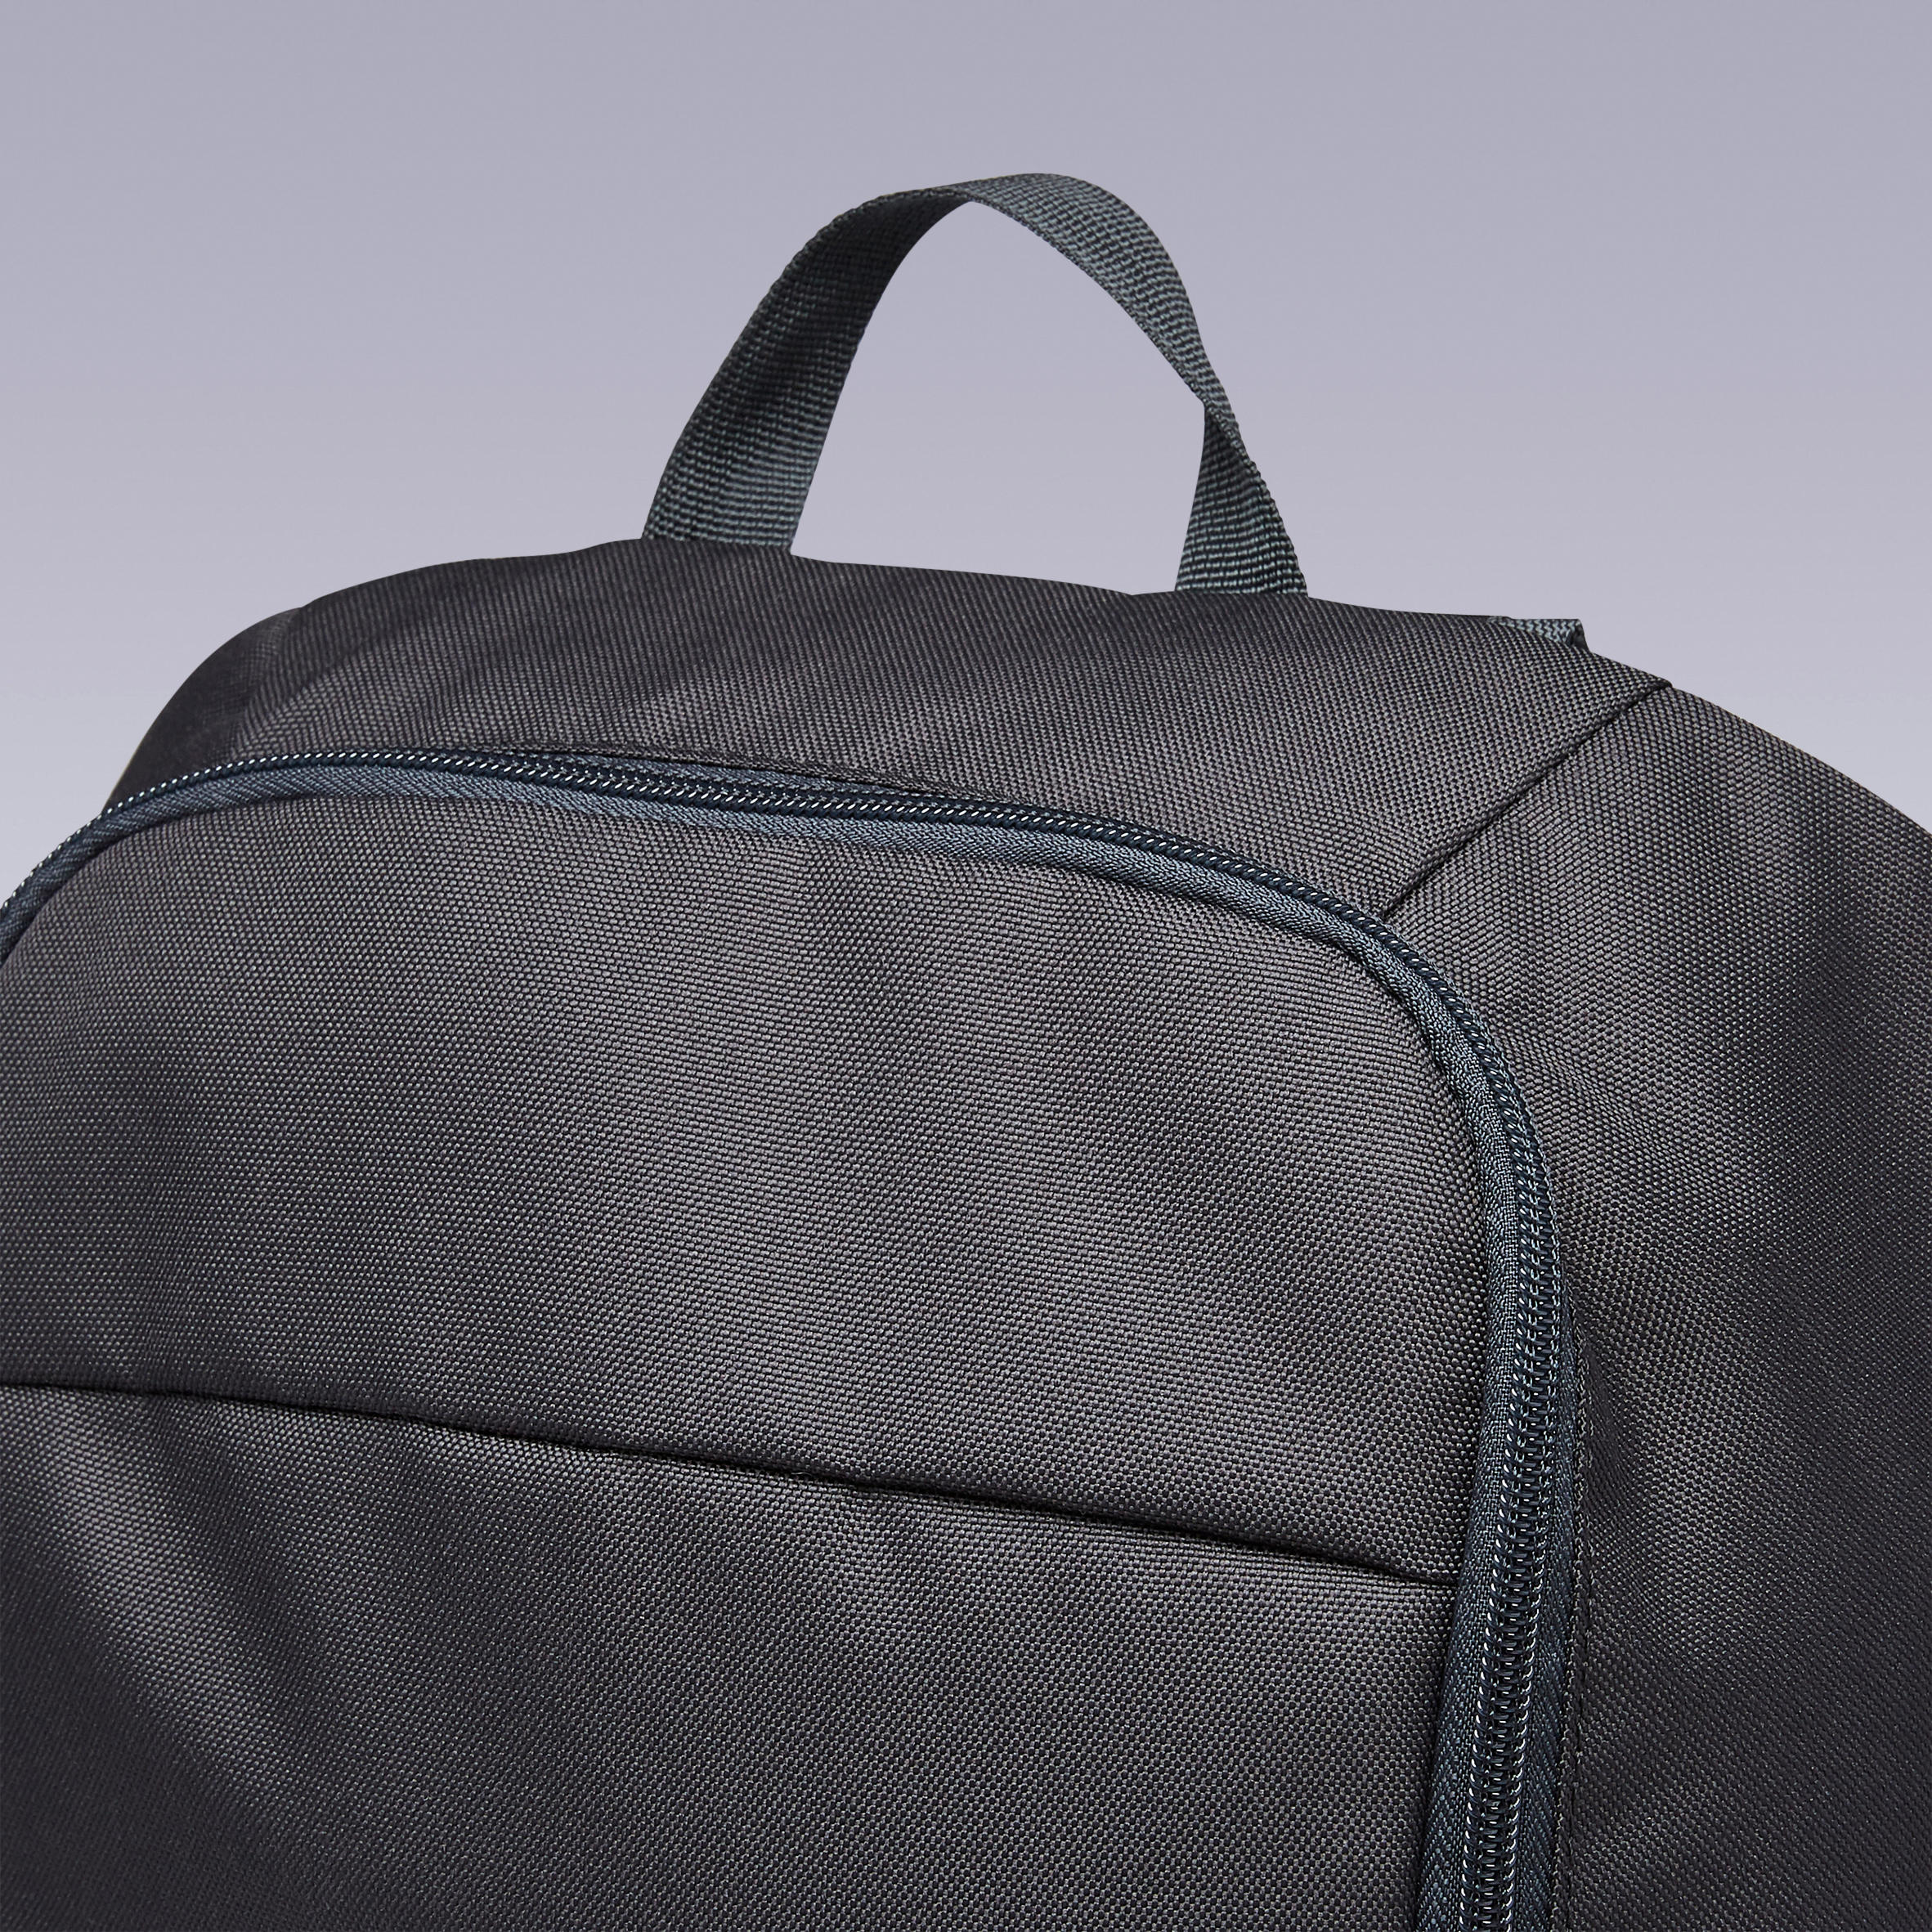 ULPP 17-Litre Backpack - Black 11/11